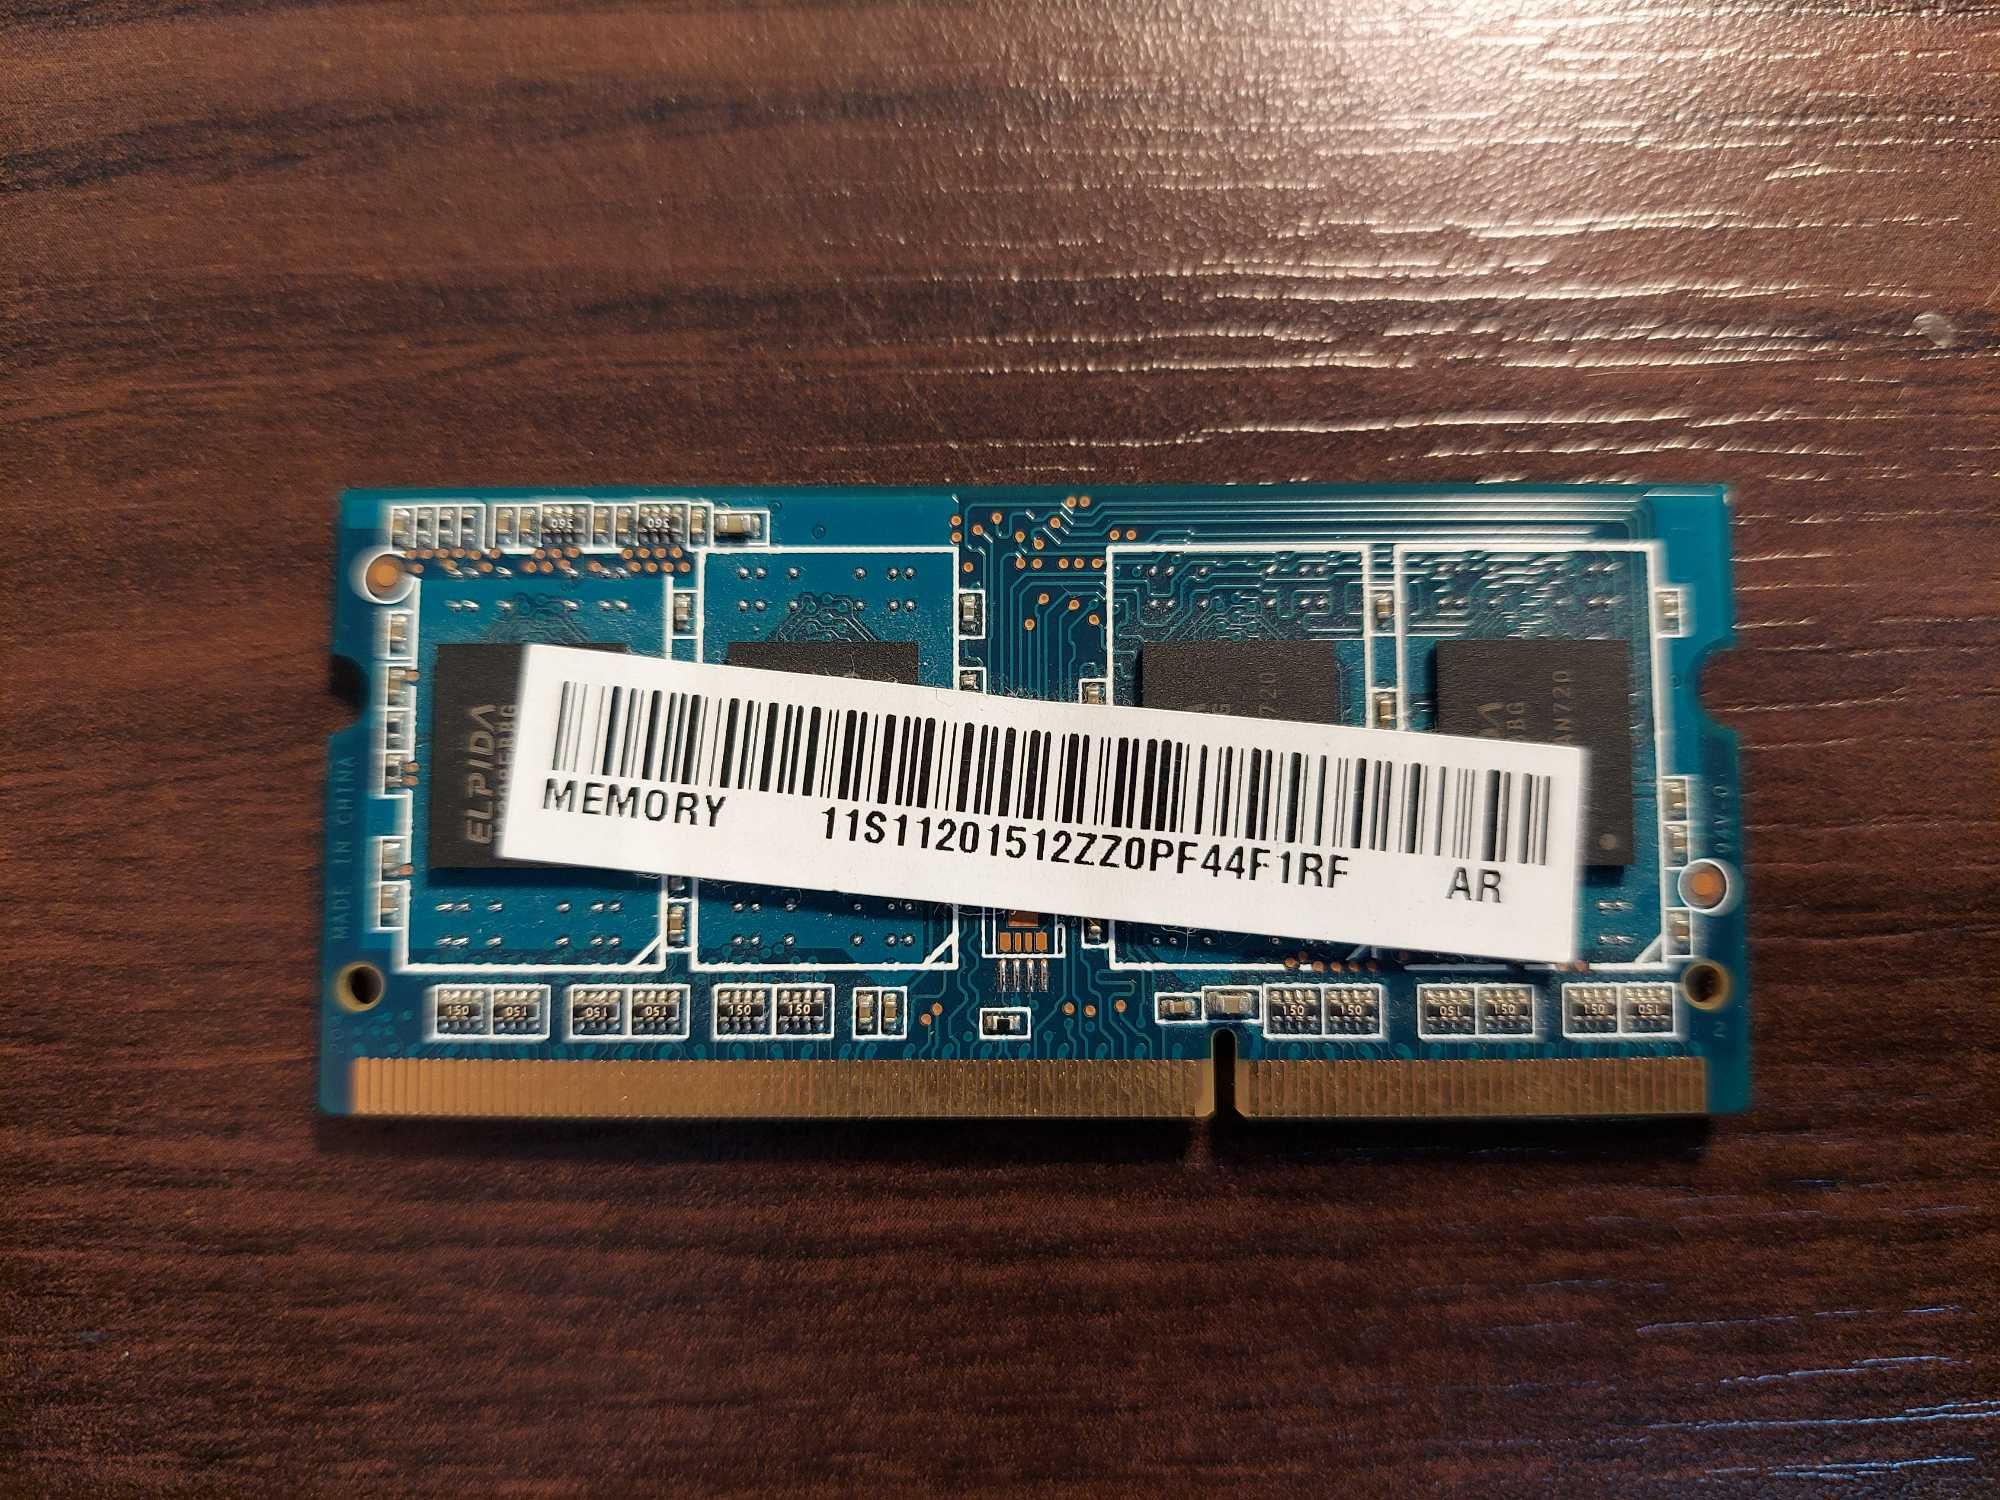 Pamięć RAM Ramaxel 4GB DDR3 1600 MHz